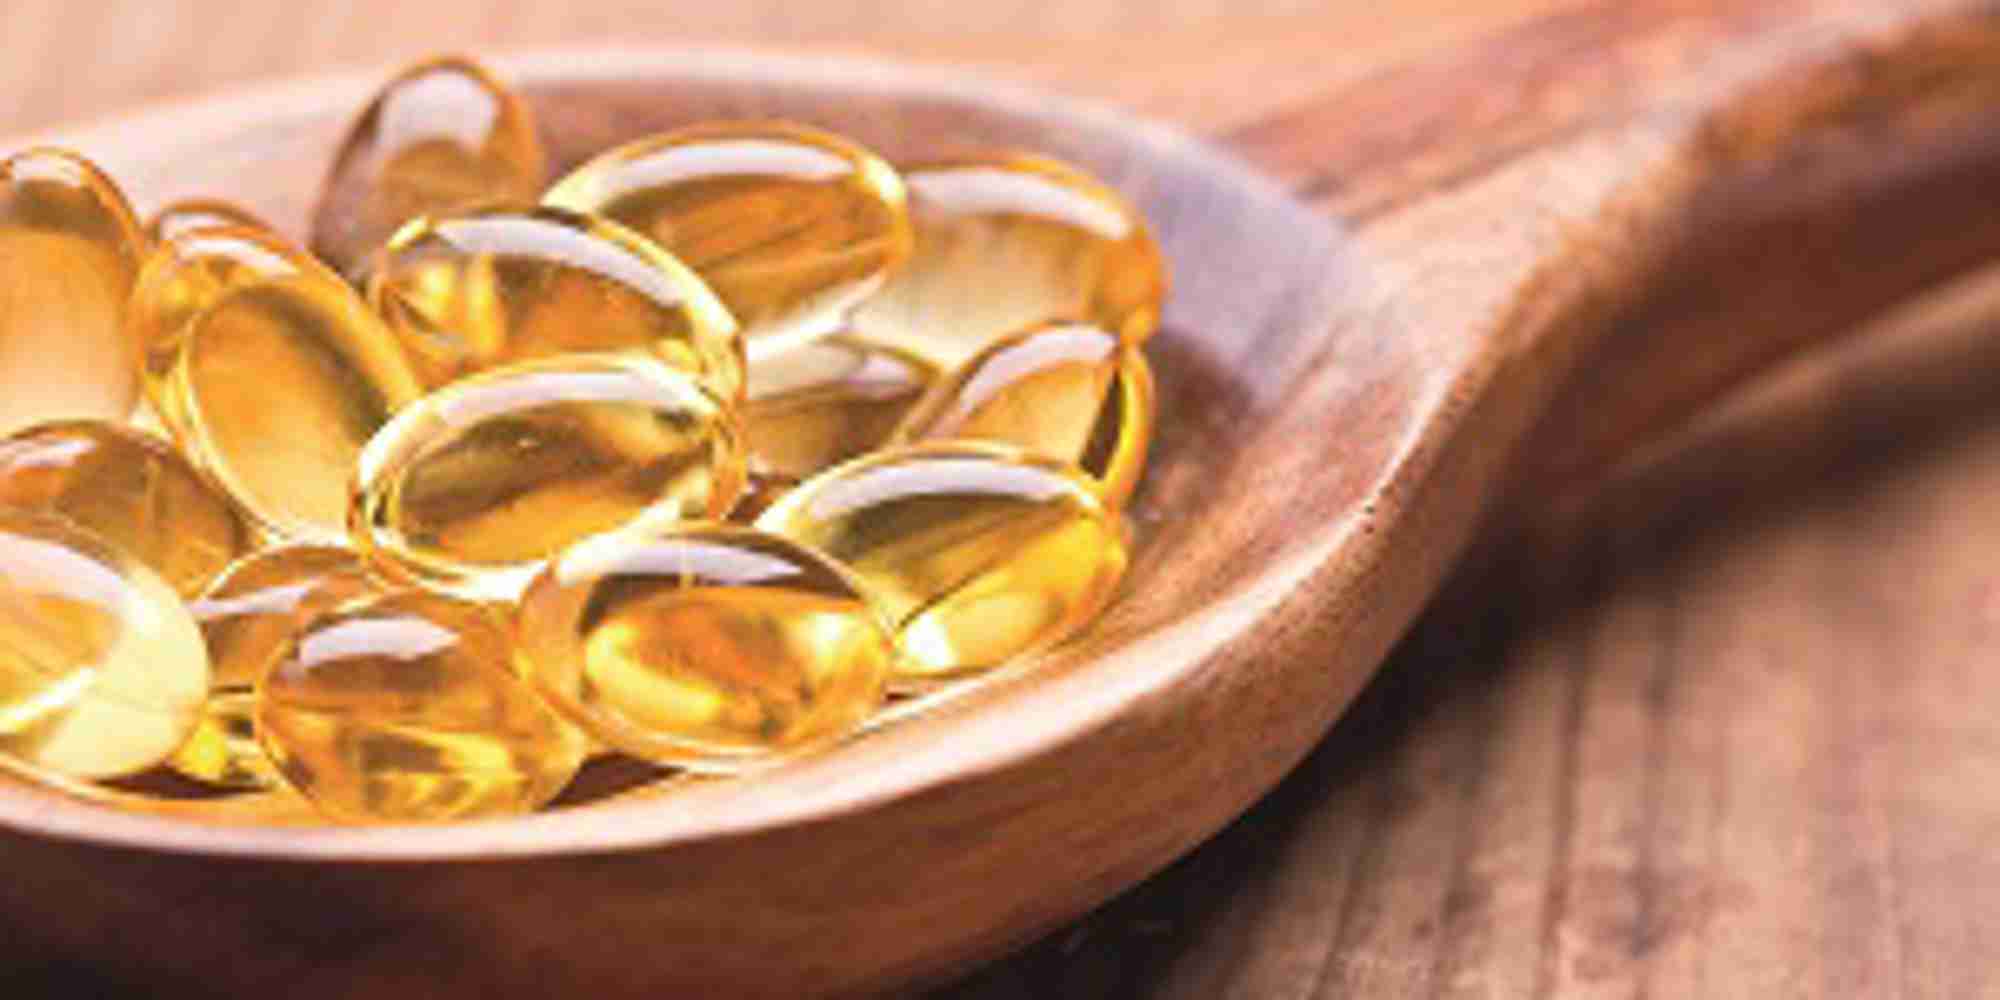 vitamin Dcod liver oil_carousel.jpg